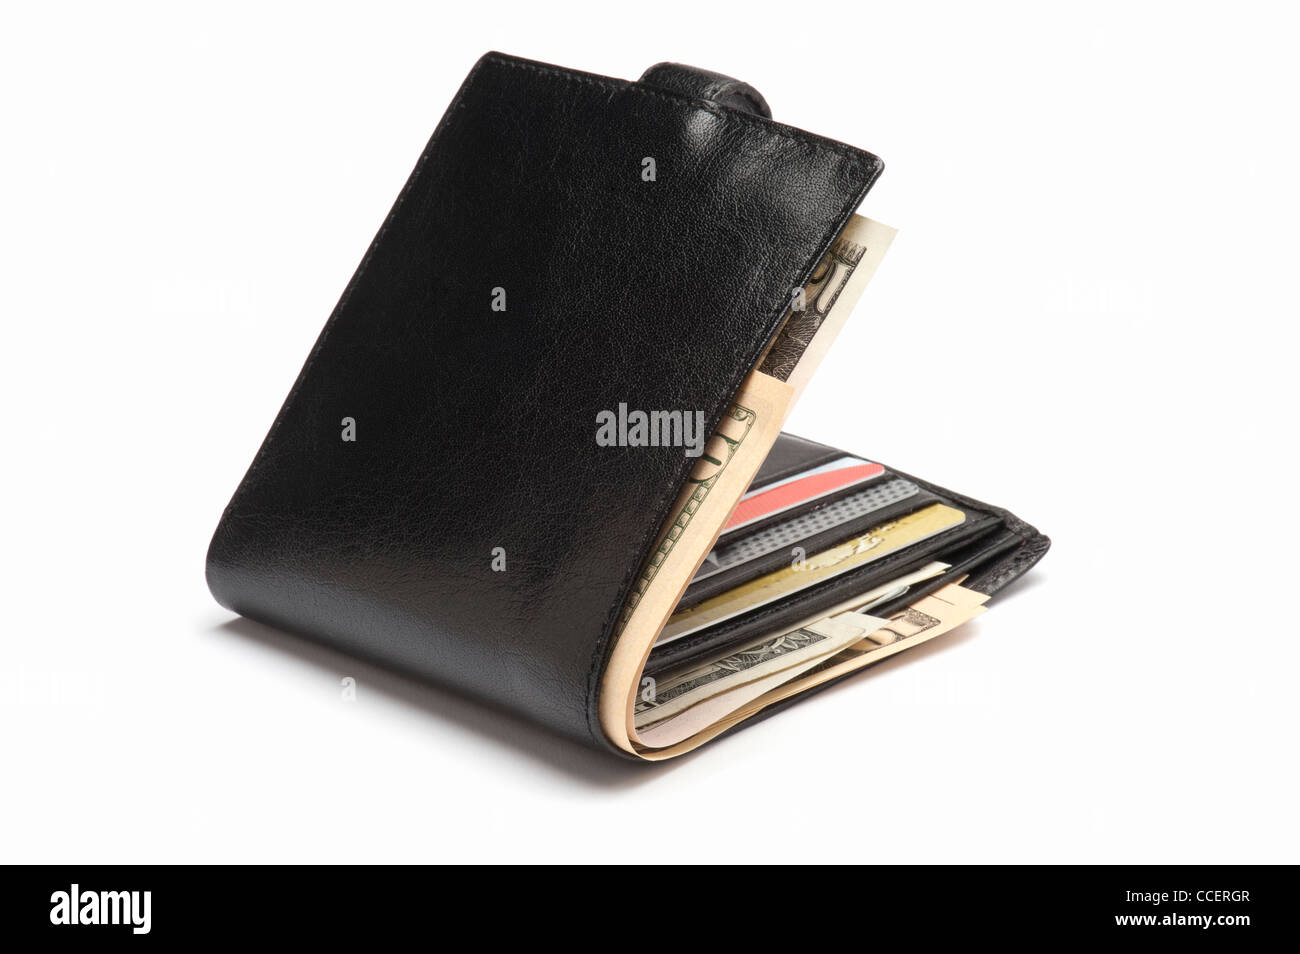 Un portefeuille en cuir noir contenant des cartes et dollars US Banque D'Images